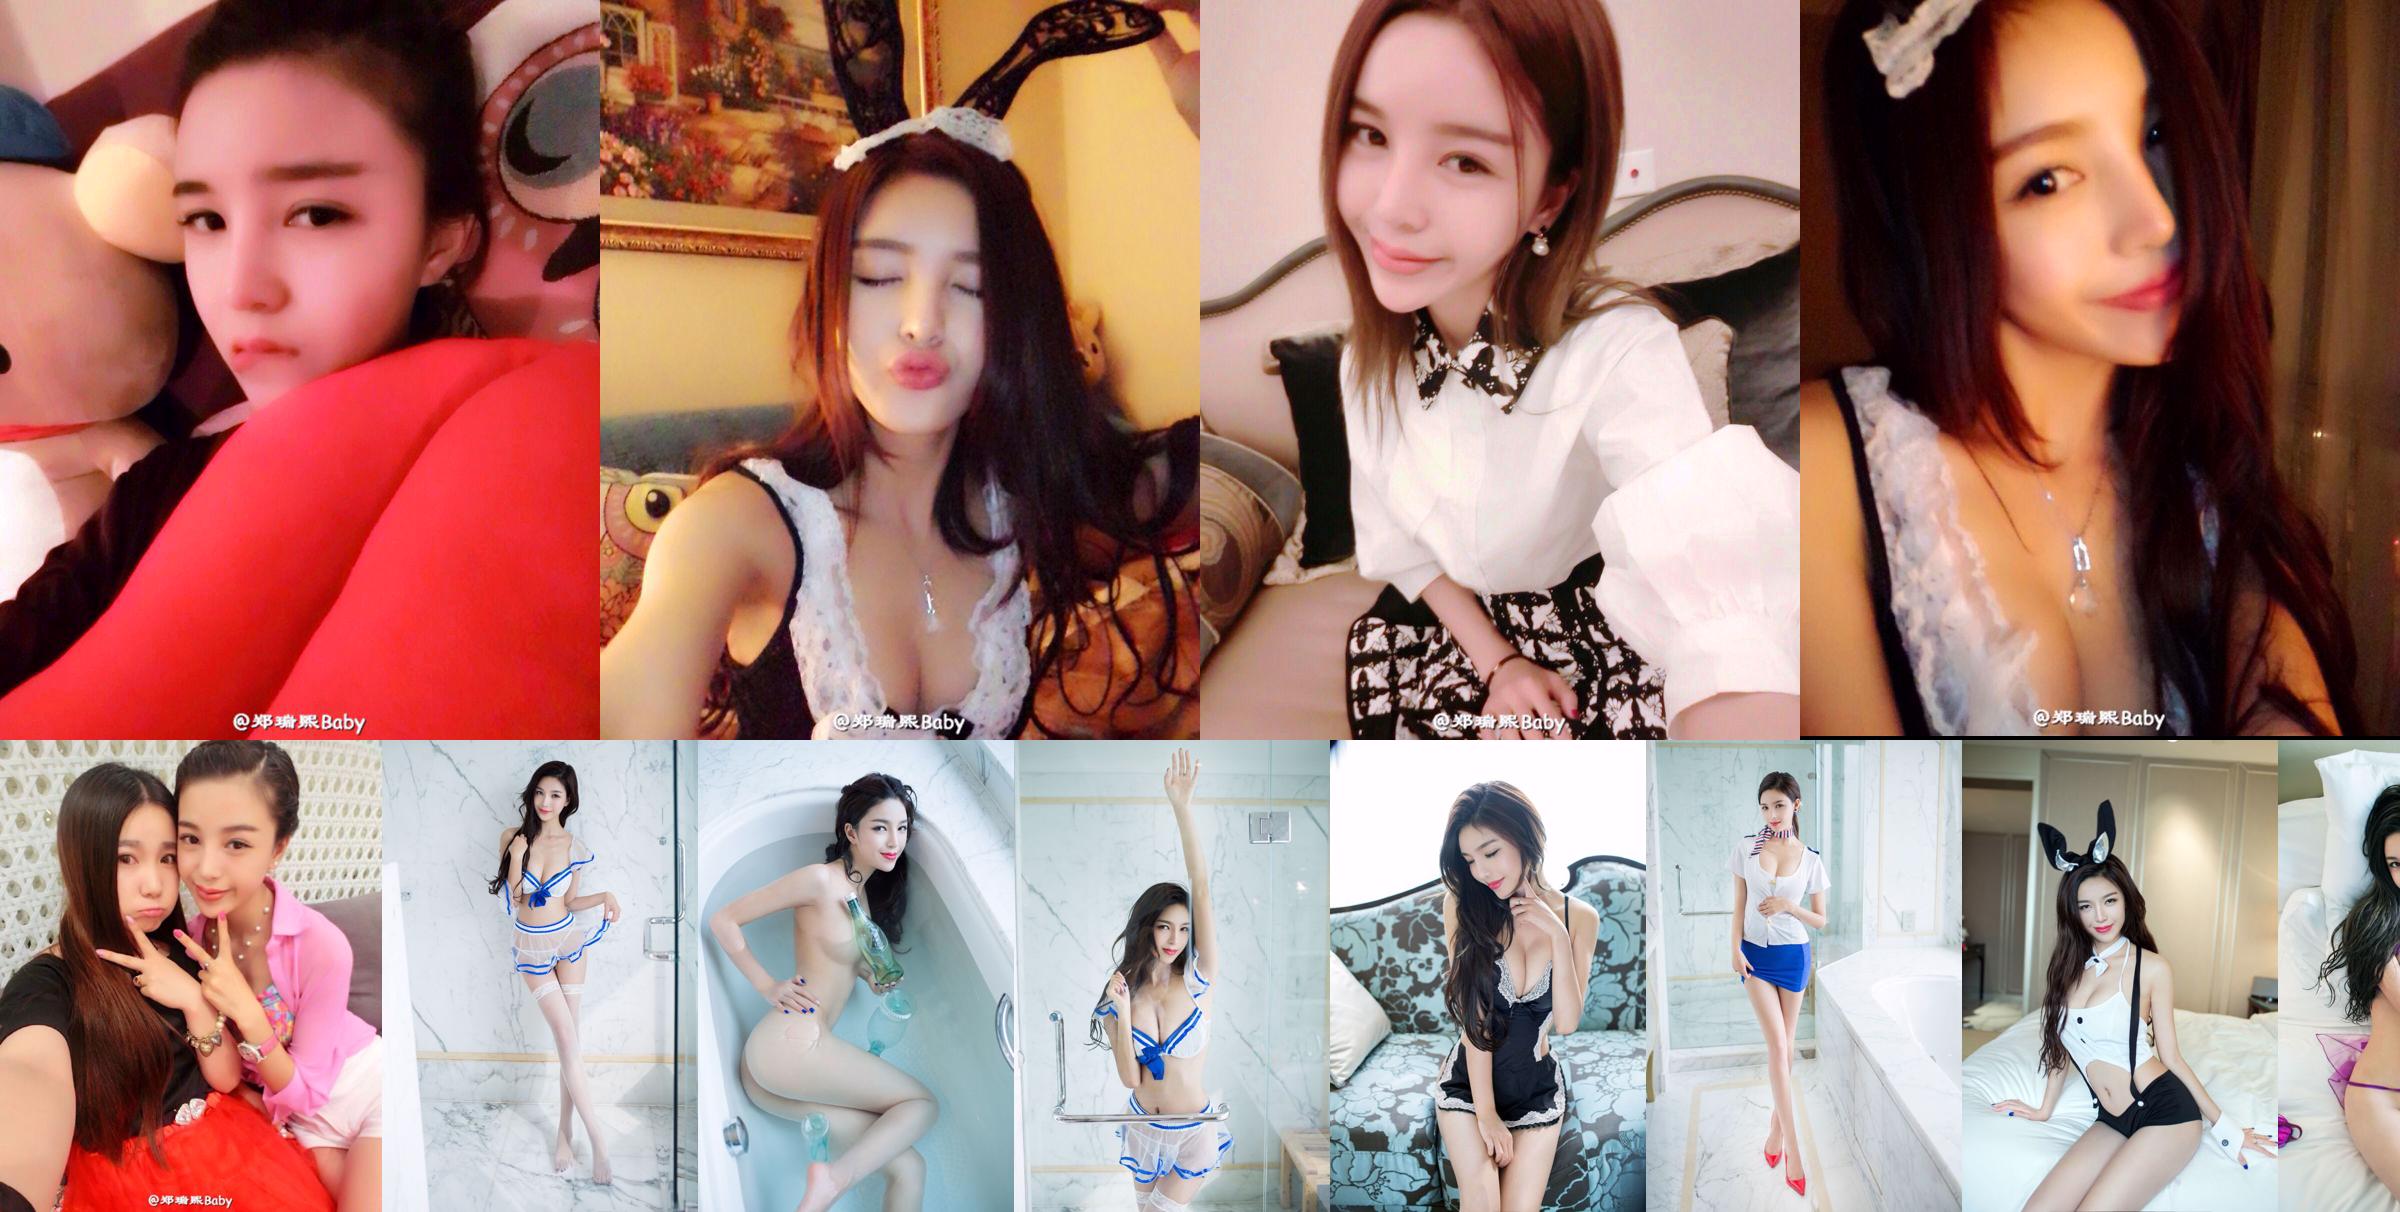 Zheng Ruixi Baby-TuiGirl Push Girl Sexy Modelo Fotos Privadas Coleção de Imagens HD No.dbed61 Página 8